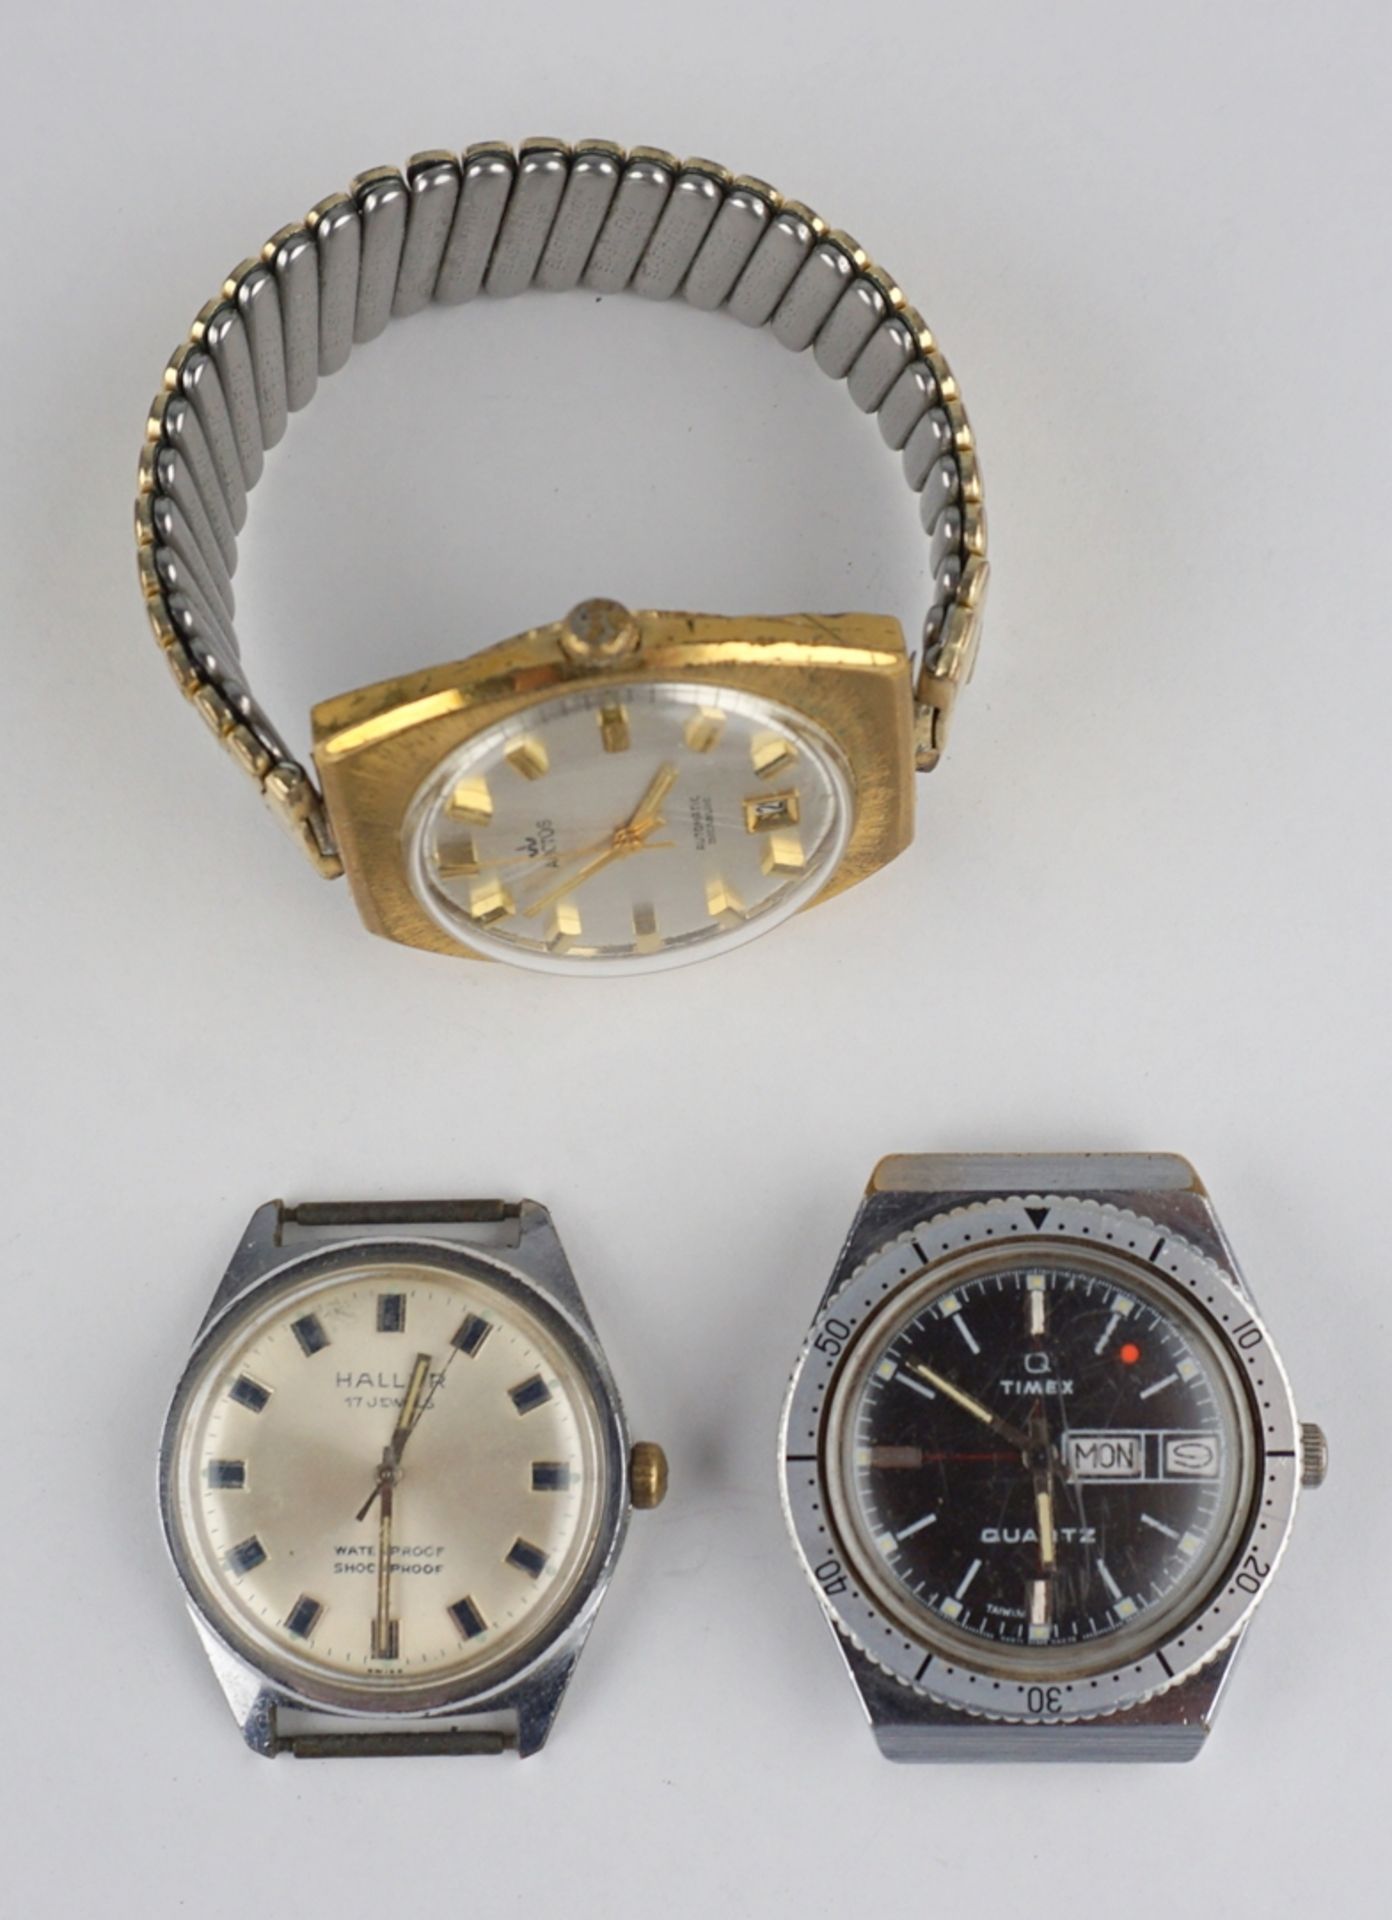 3 Armbanduhren Haller, Timex Q und Arctos, 1950er bis 1970er Jahre - Image 2 of 3